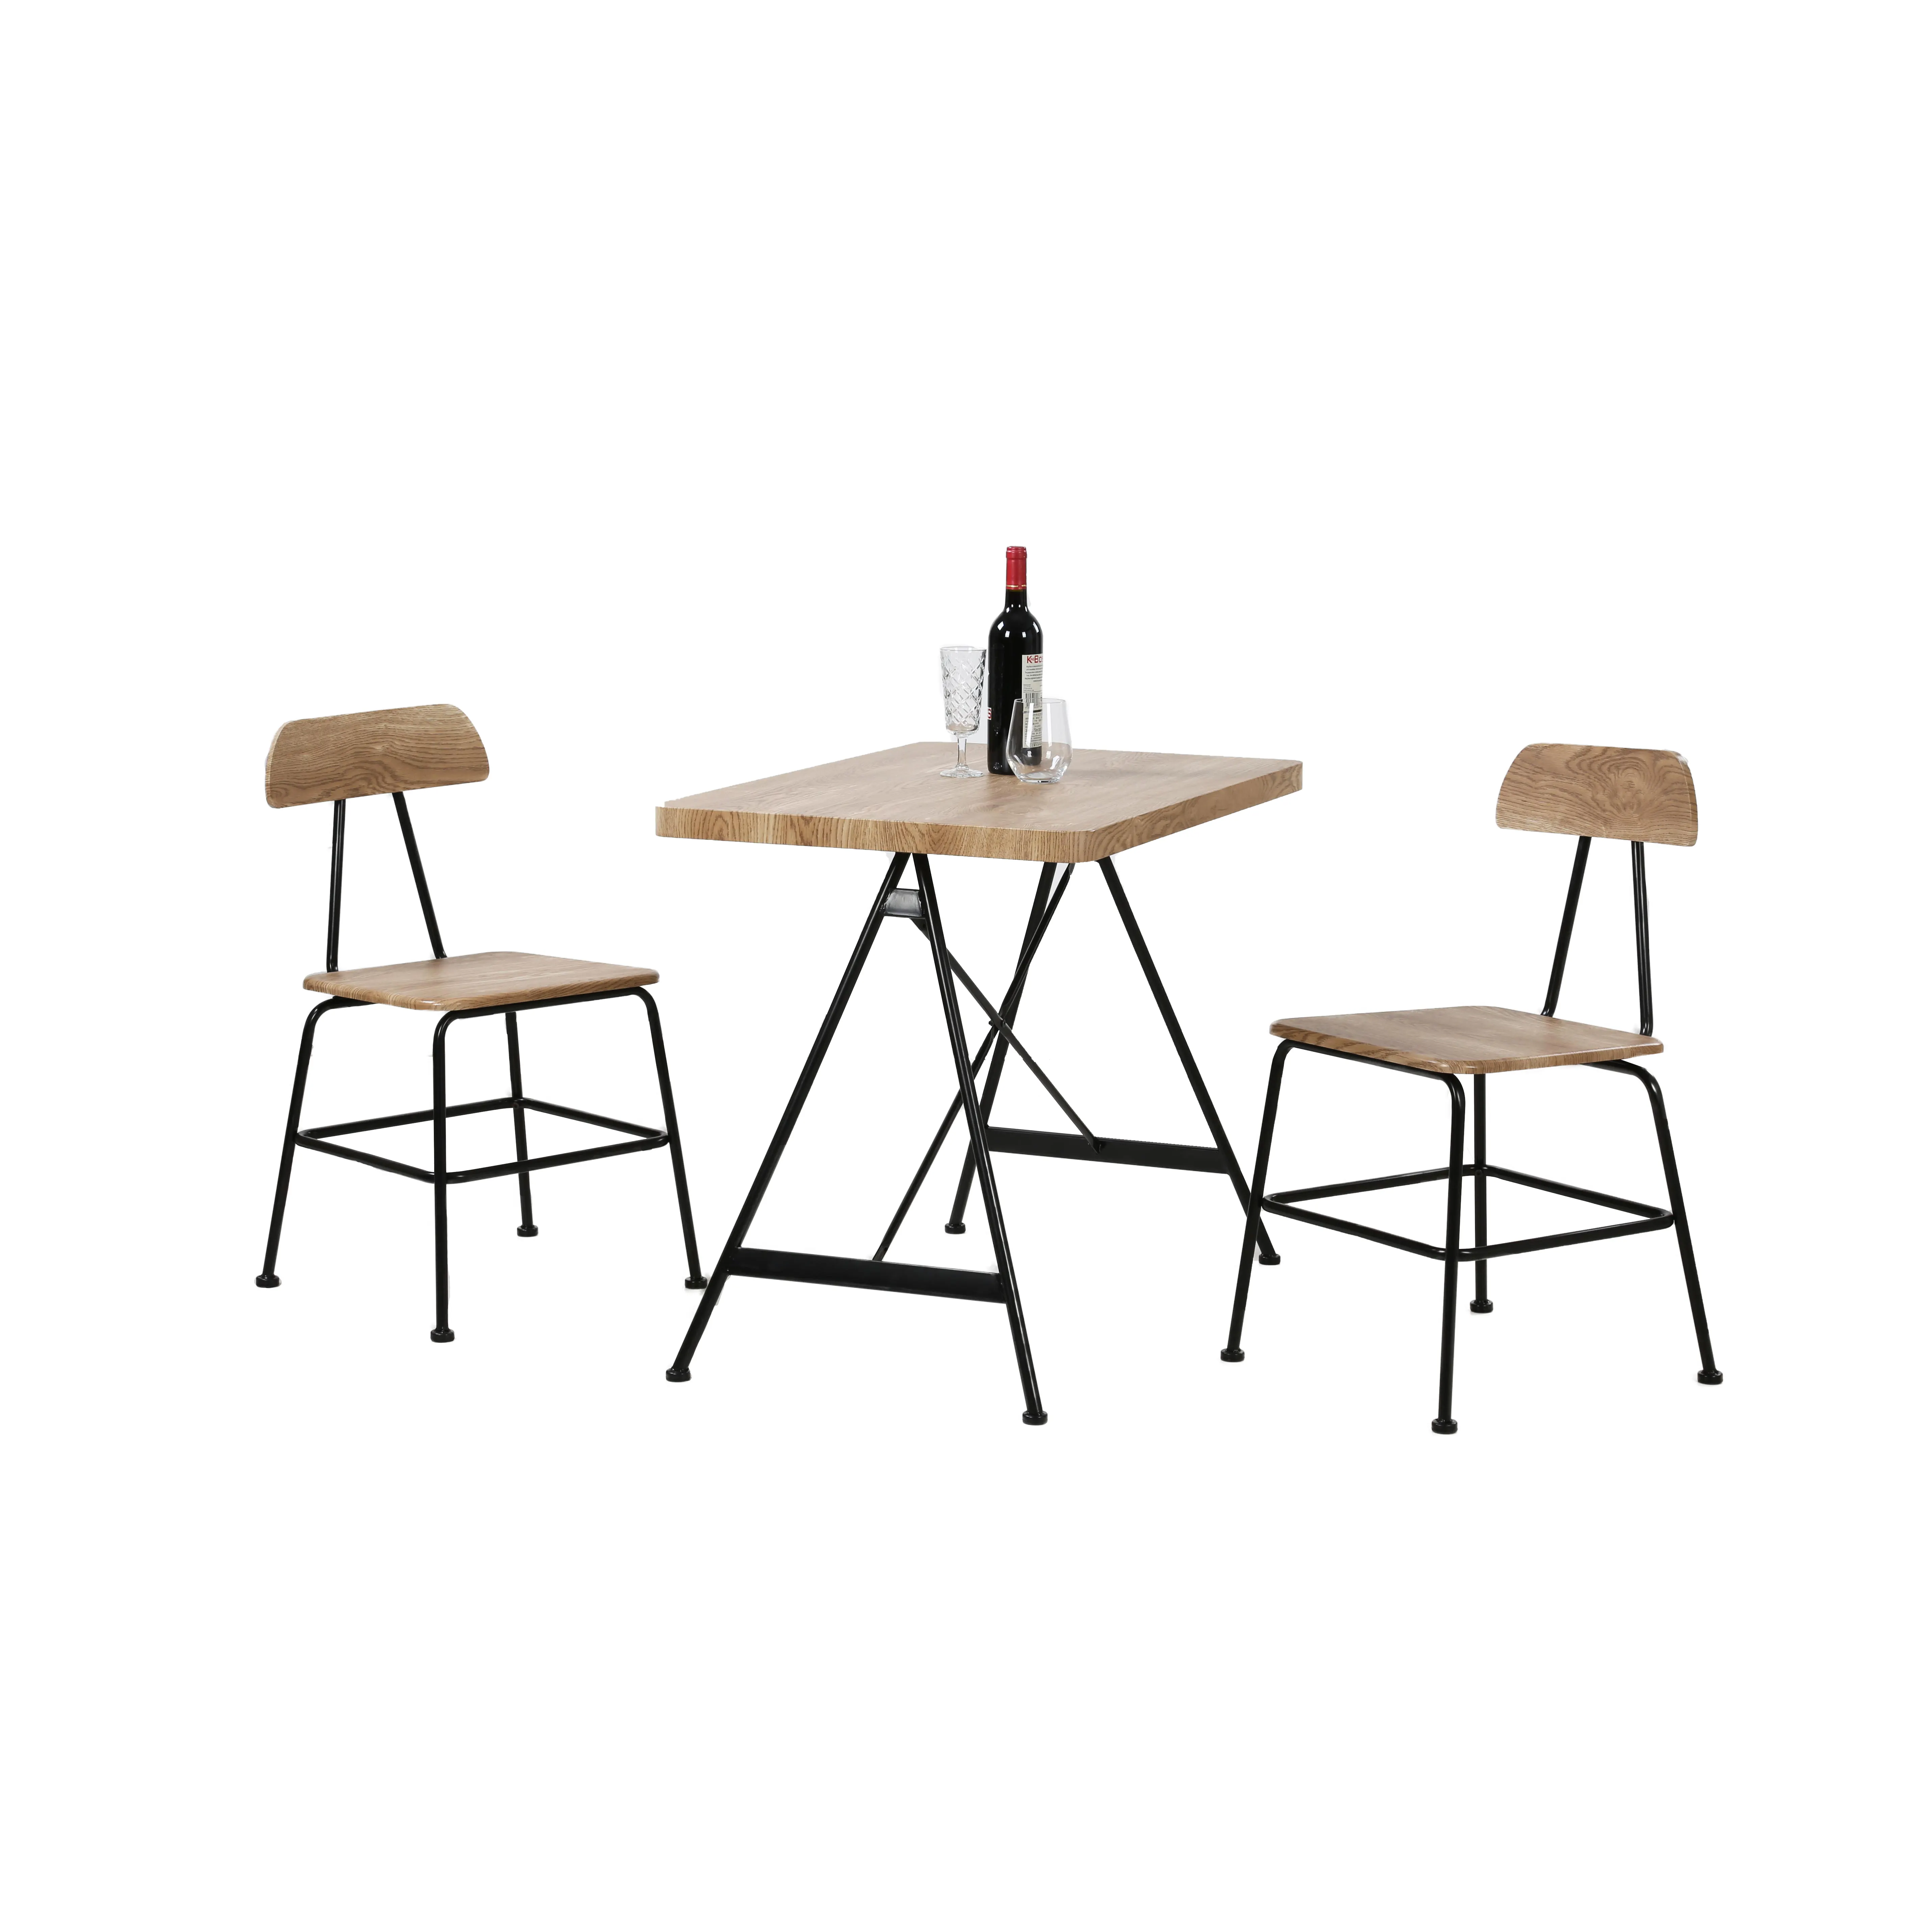 ダイニングテーブルセットモダンシンプルヨーロッパデザイン木製トップディナールームテーブル椅子2人掛け